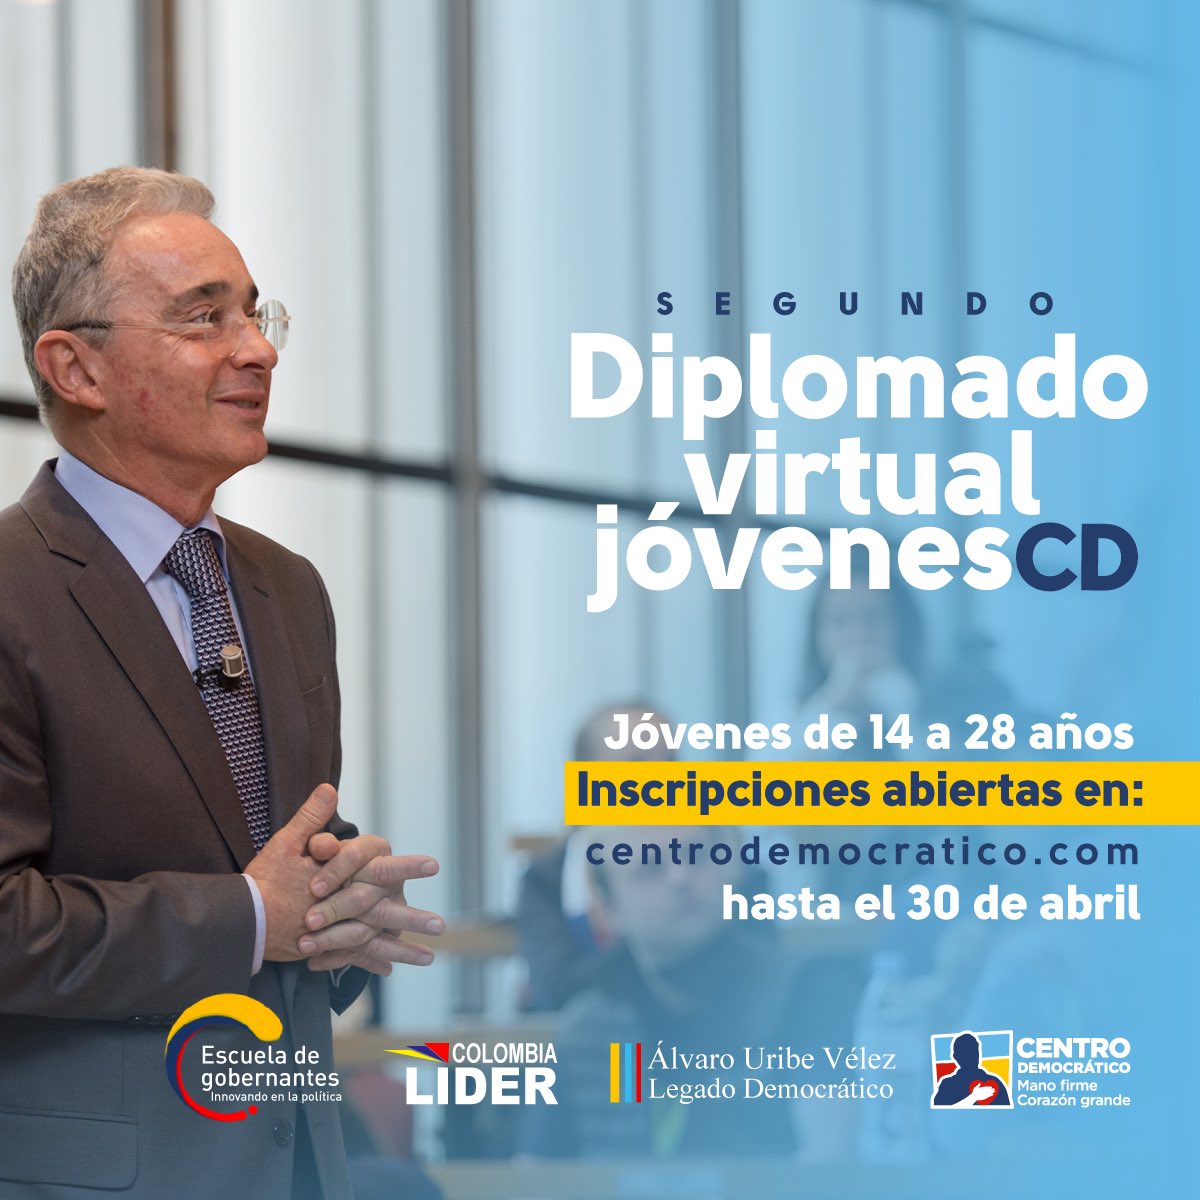 Después de nuestro exitoso primer Diplomado de Jóvenes Álvaro Uribe Vélez, Legado Democrático, llega la segunda versión. Si eres joven entre los 14 a 28 años comprometido con el futuro de Colombia, inscríbete en centrodemocratico.com hasta el 30 de abril. 👏🏼✅‼️